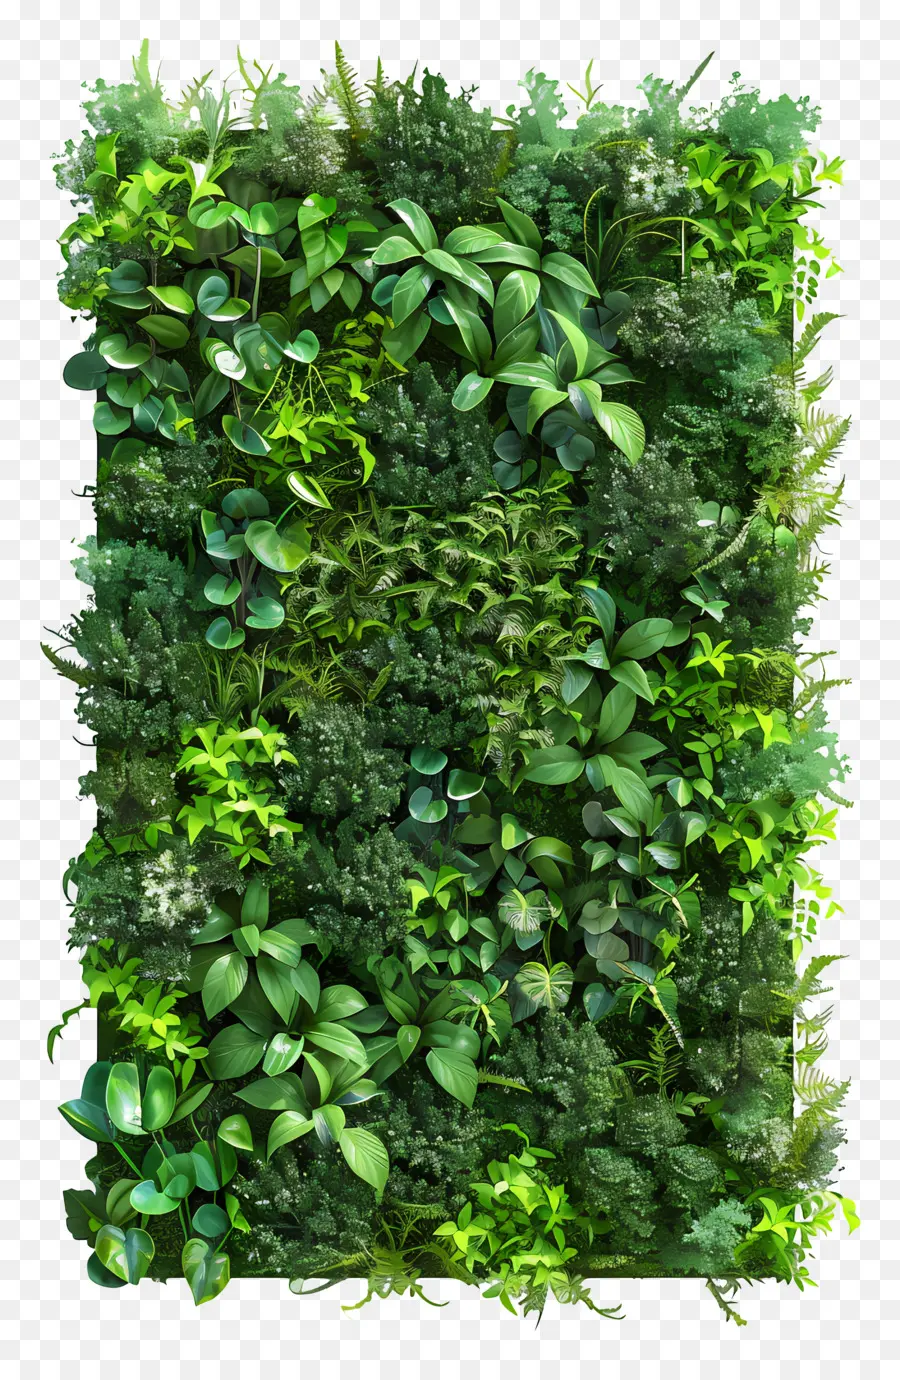 Xanh tường - Tường thực vật xanh tươi tốt với sự đa dạng